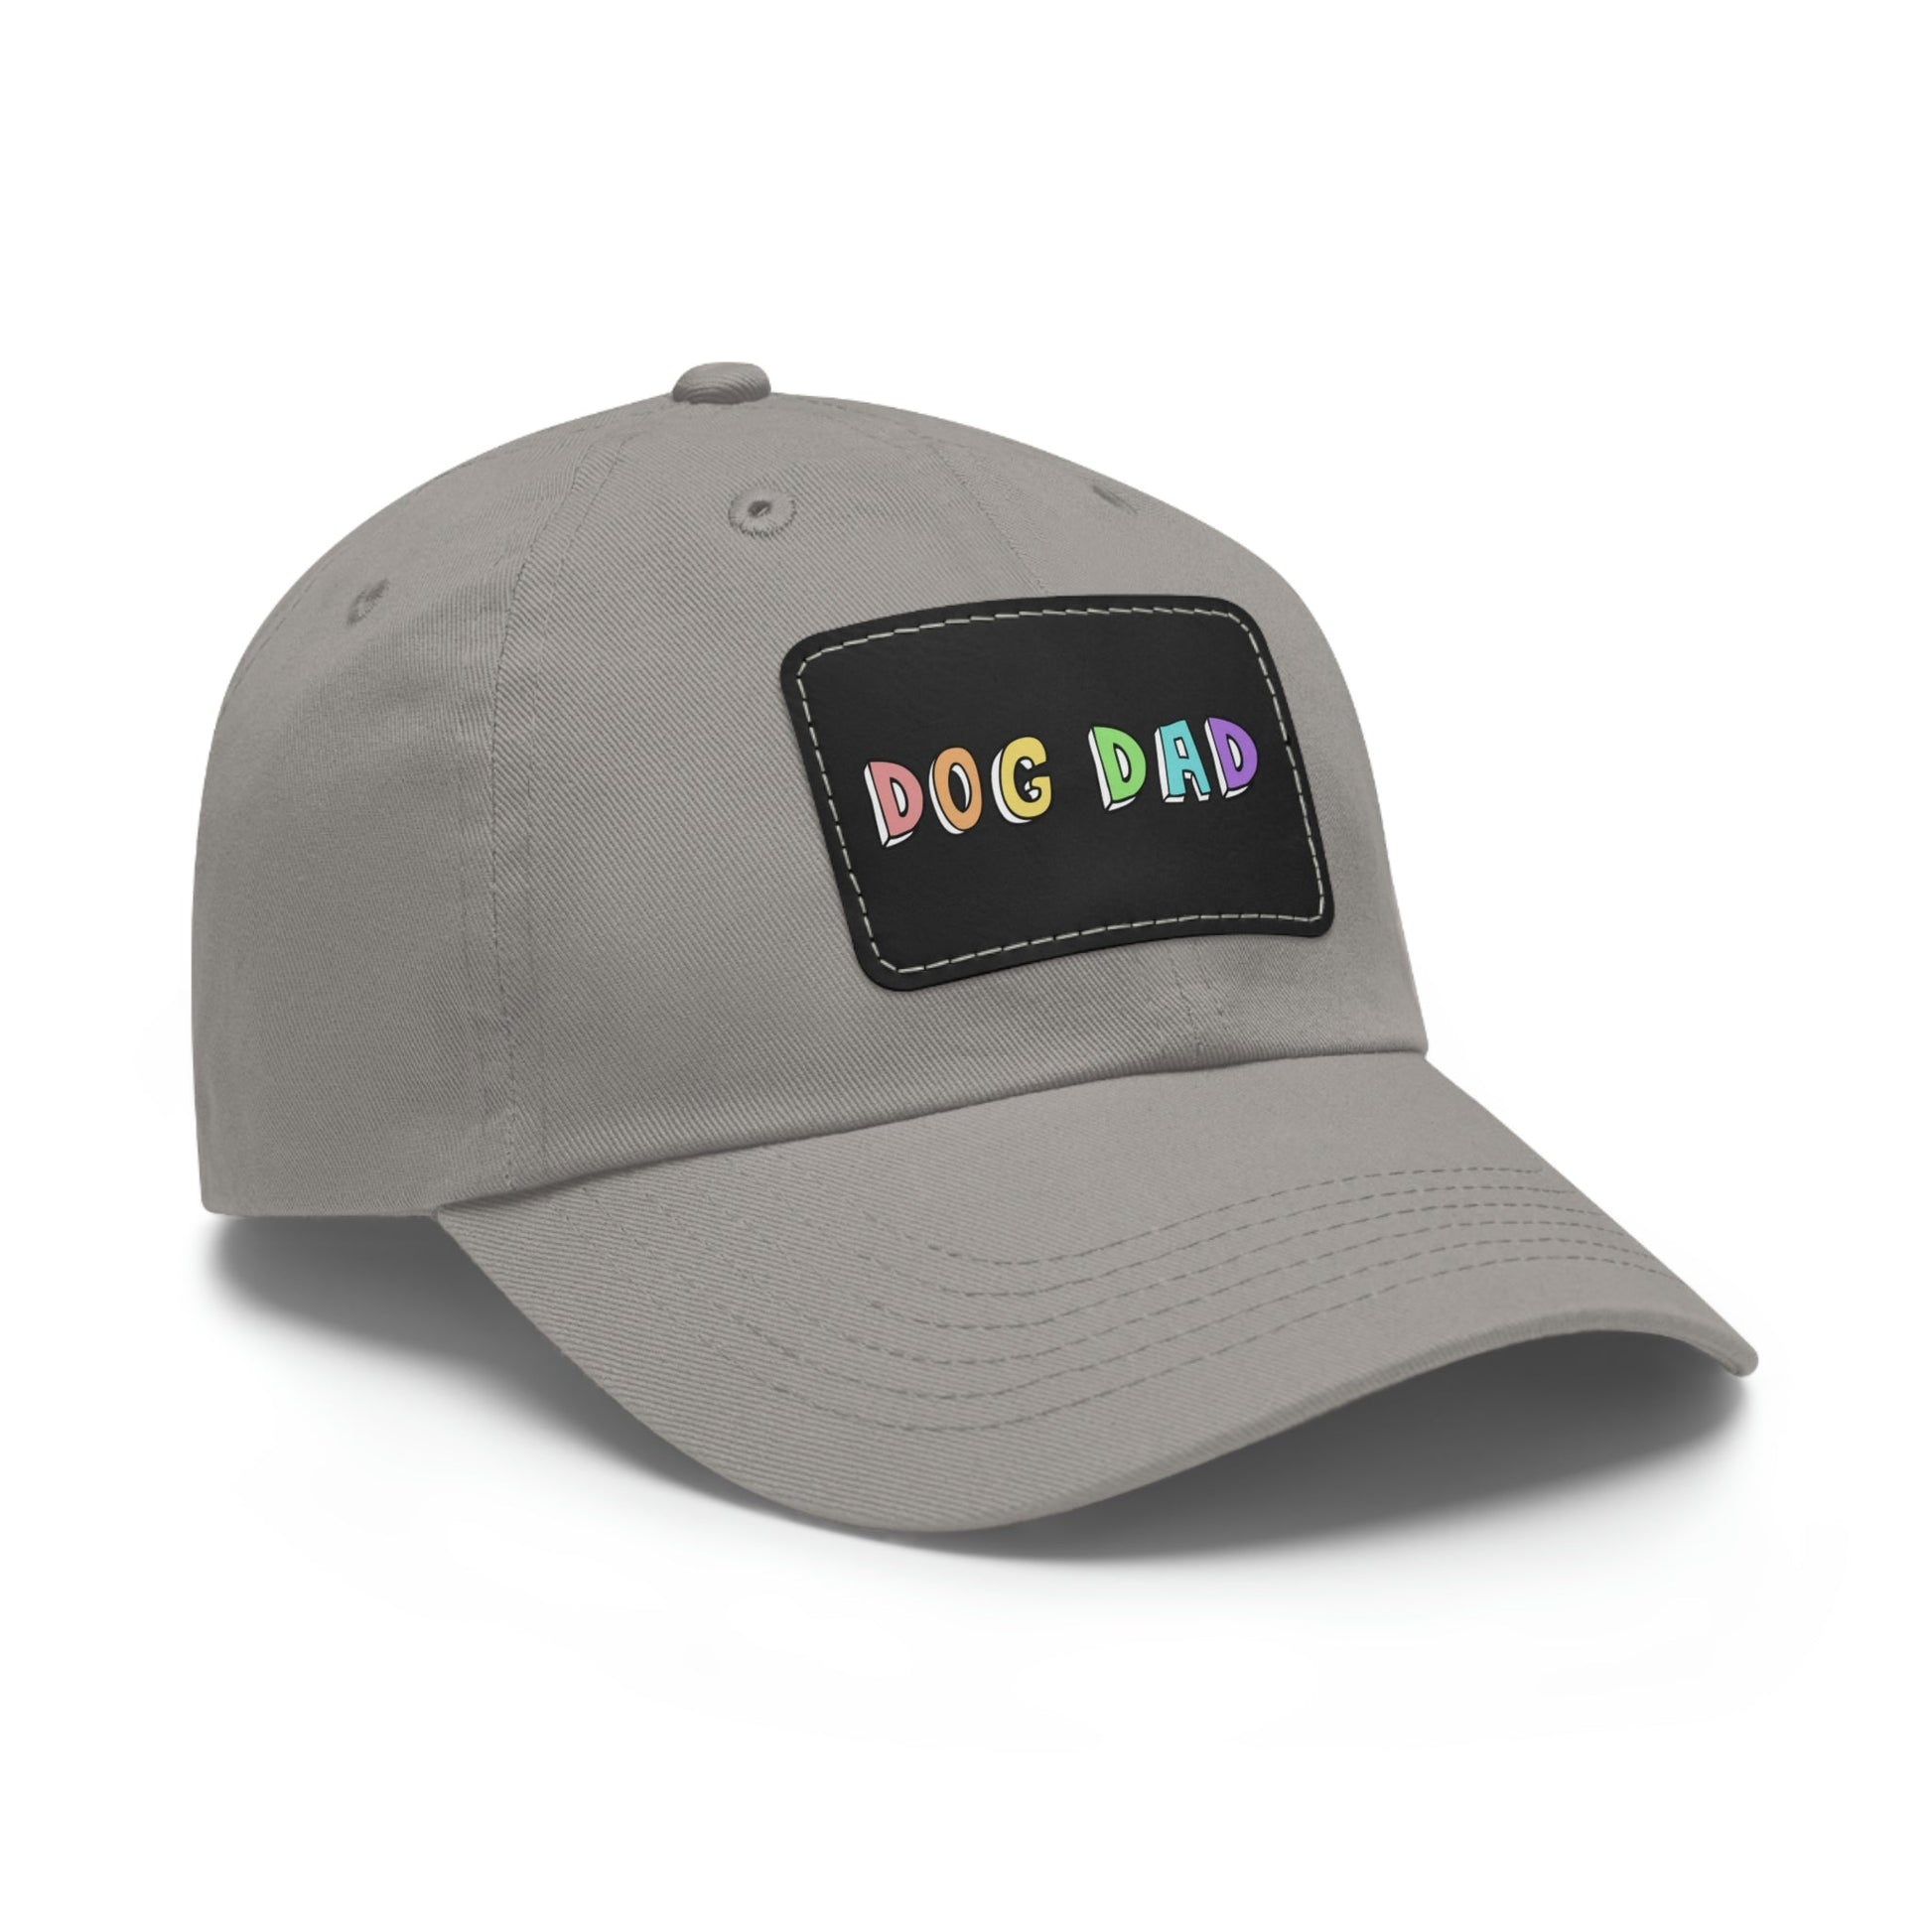 Dog Dad | Dad Hat - Detezi Designs-17511759076577632008